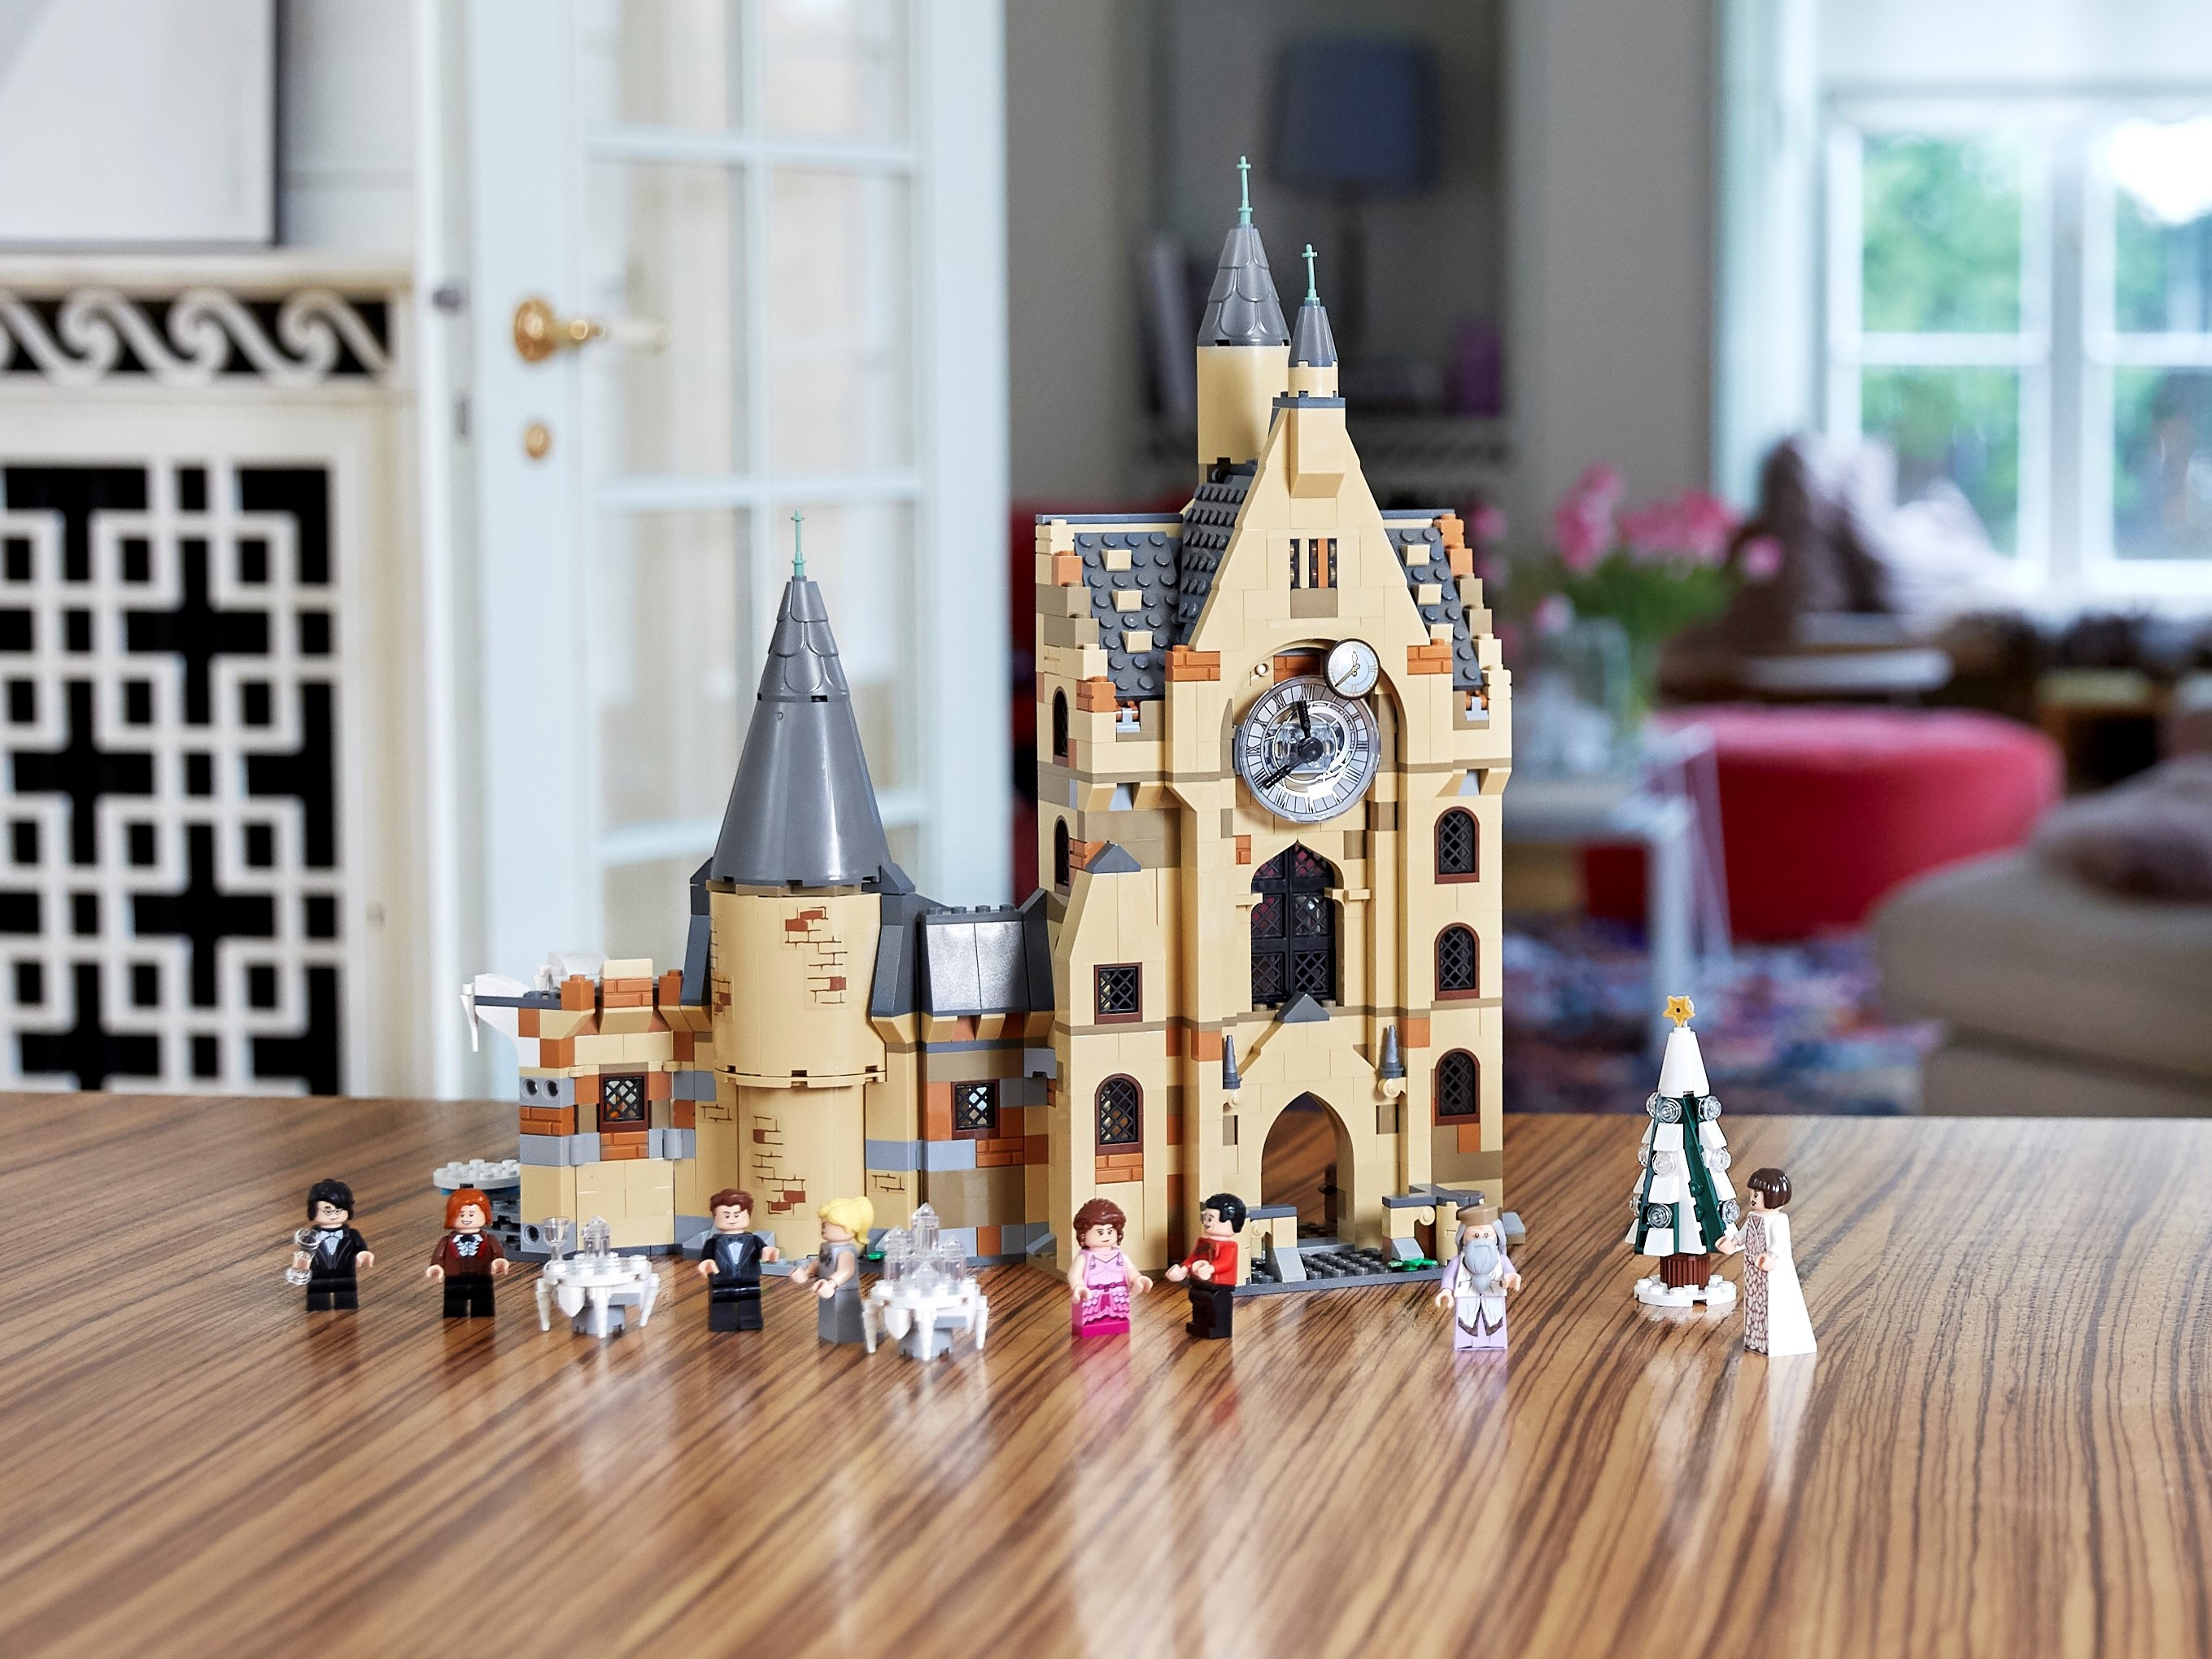 Lego Harry Potter Torre de Astronomia Hogwarts